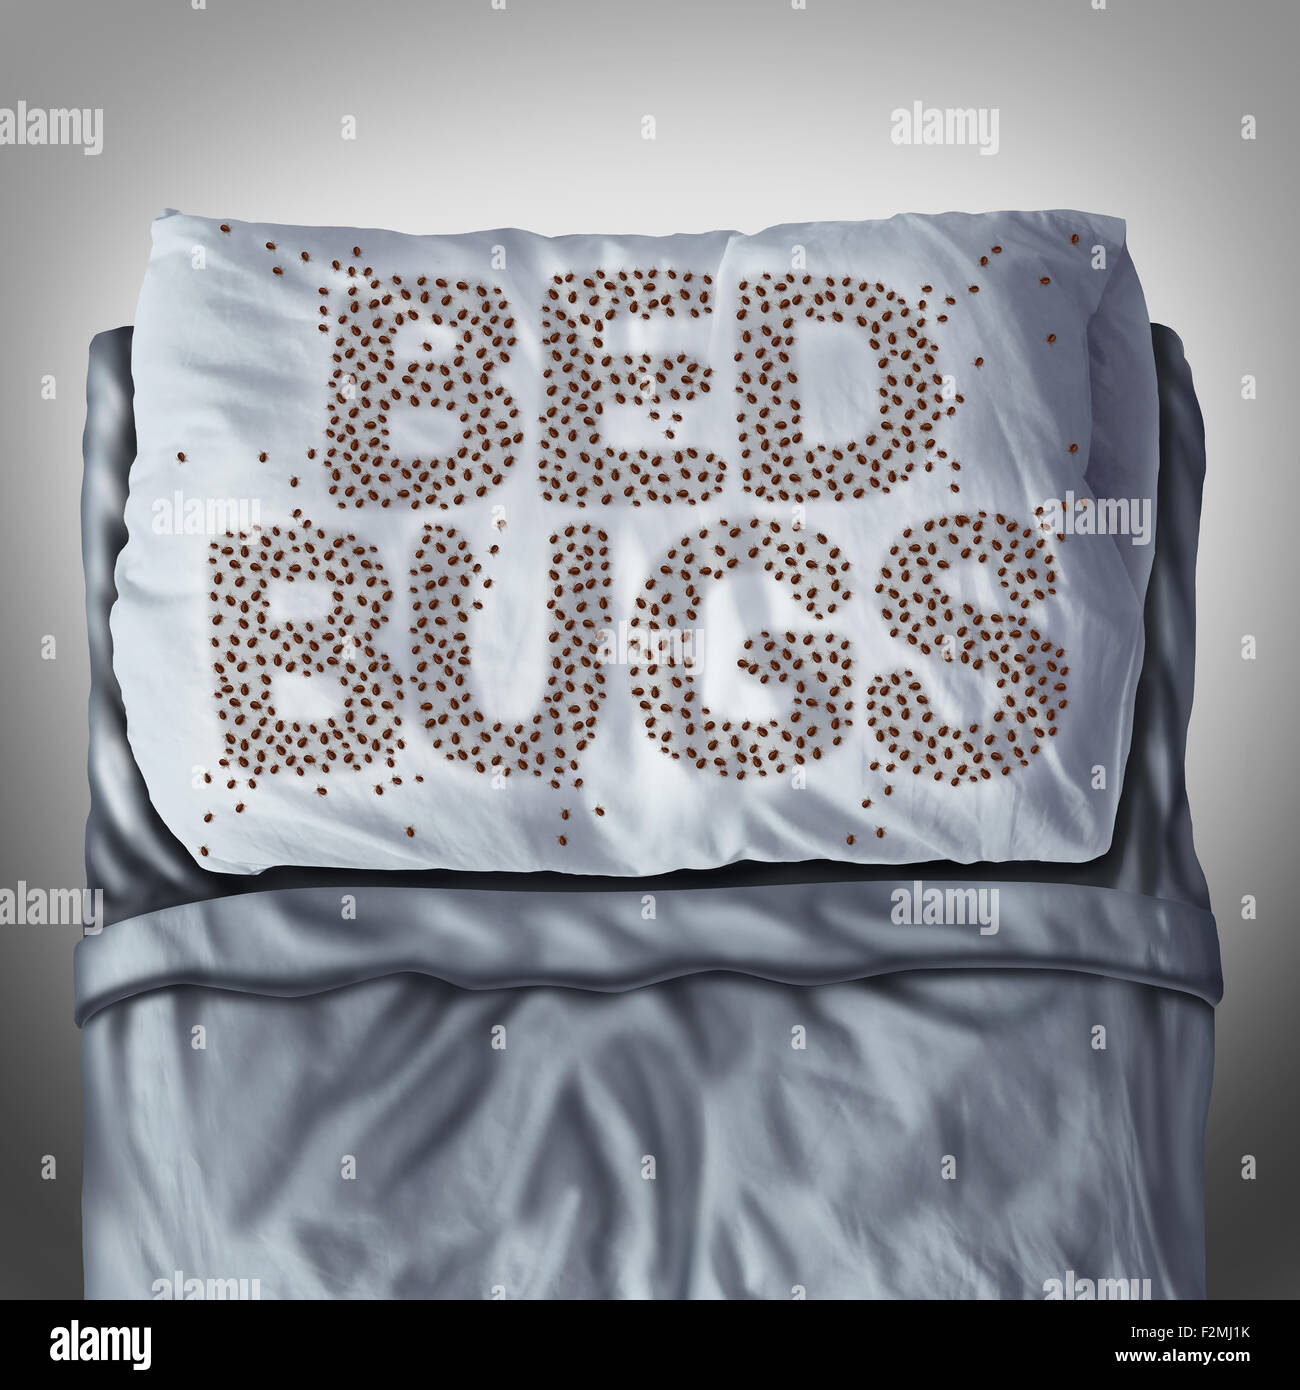 Bed bug sul cuscino e nel letto come una infestazione bedbug concetto conformato come lettere di testo come parassita pesti di insetto sotto i fogli per un'igiene sanitaria simbolo e metafora del parassita bite pericolo all'interno di un materasso. Foto Stock